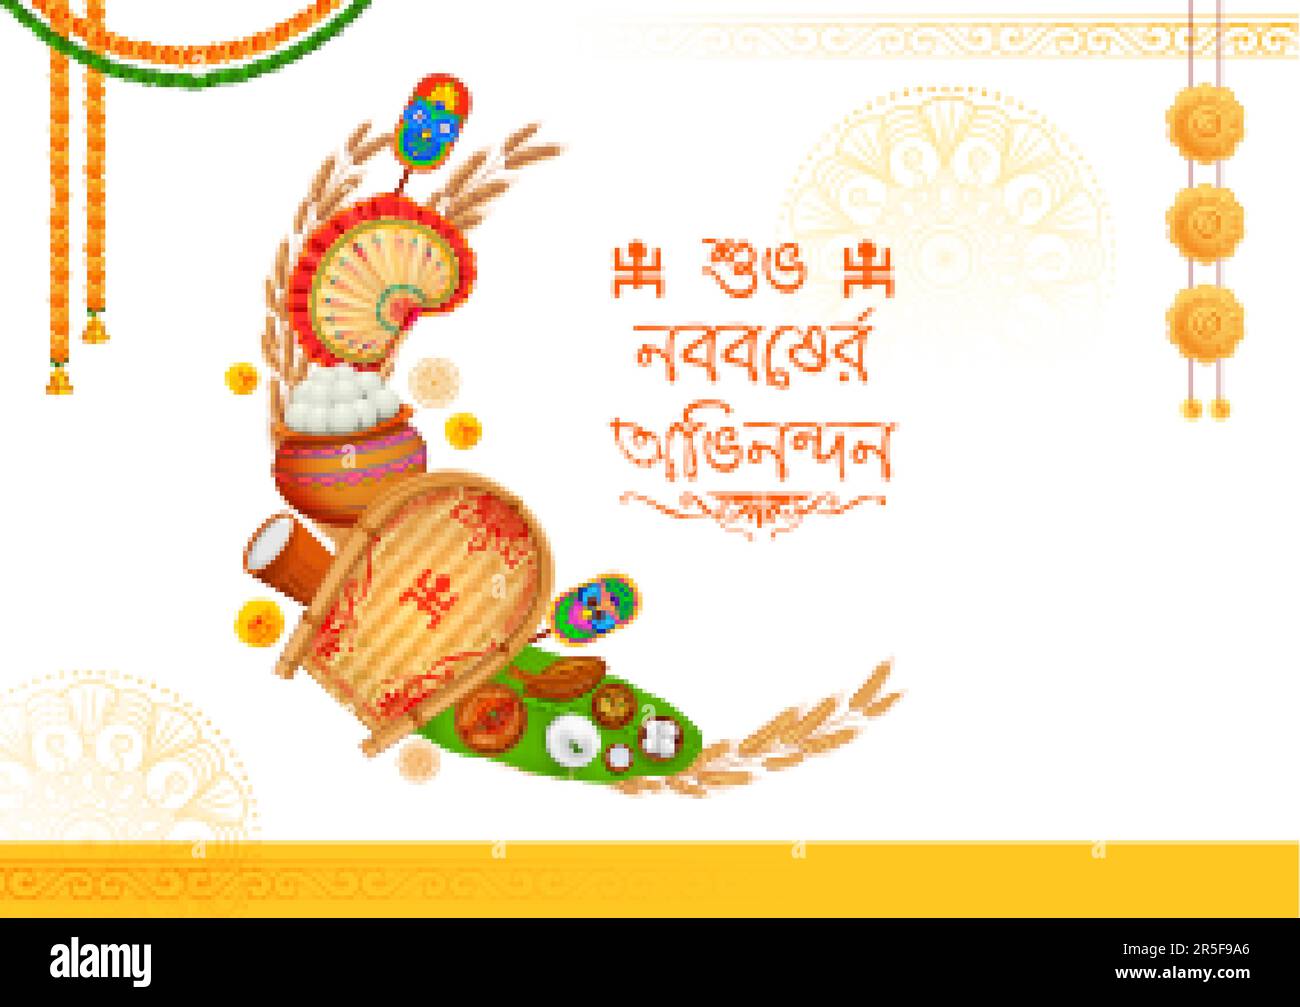 Pahela boishakh Stock Vector Images - Alamy